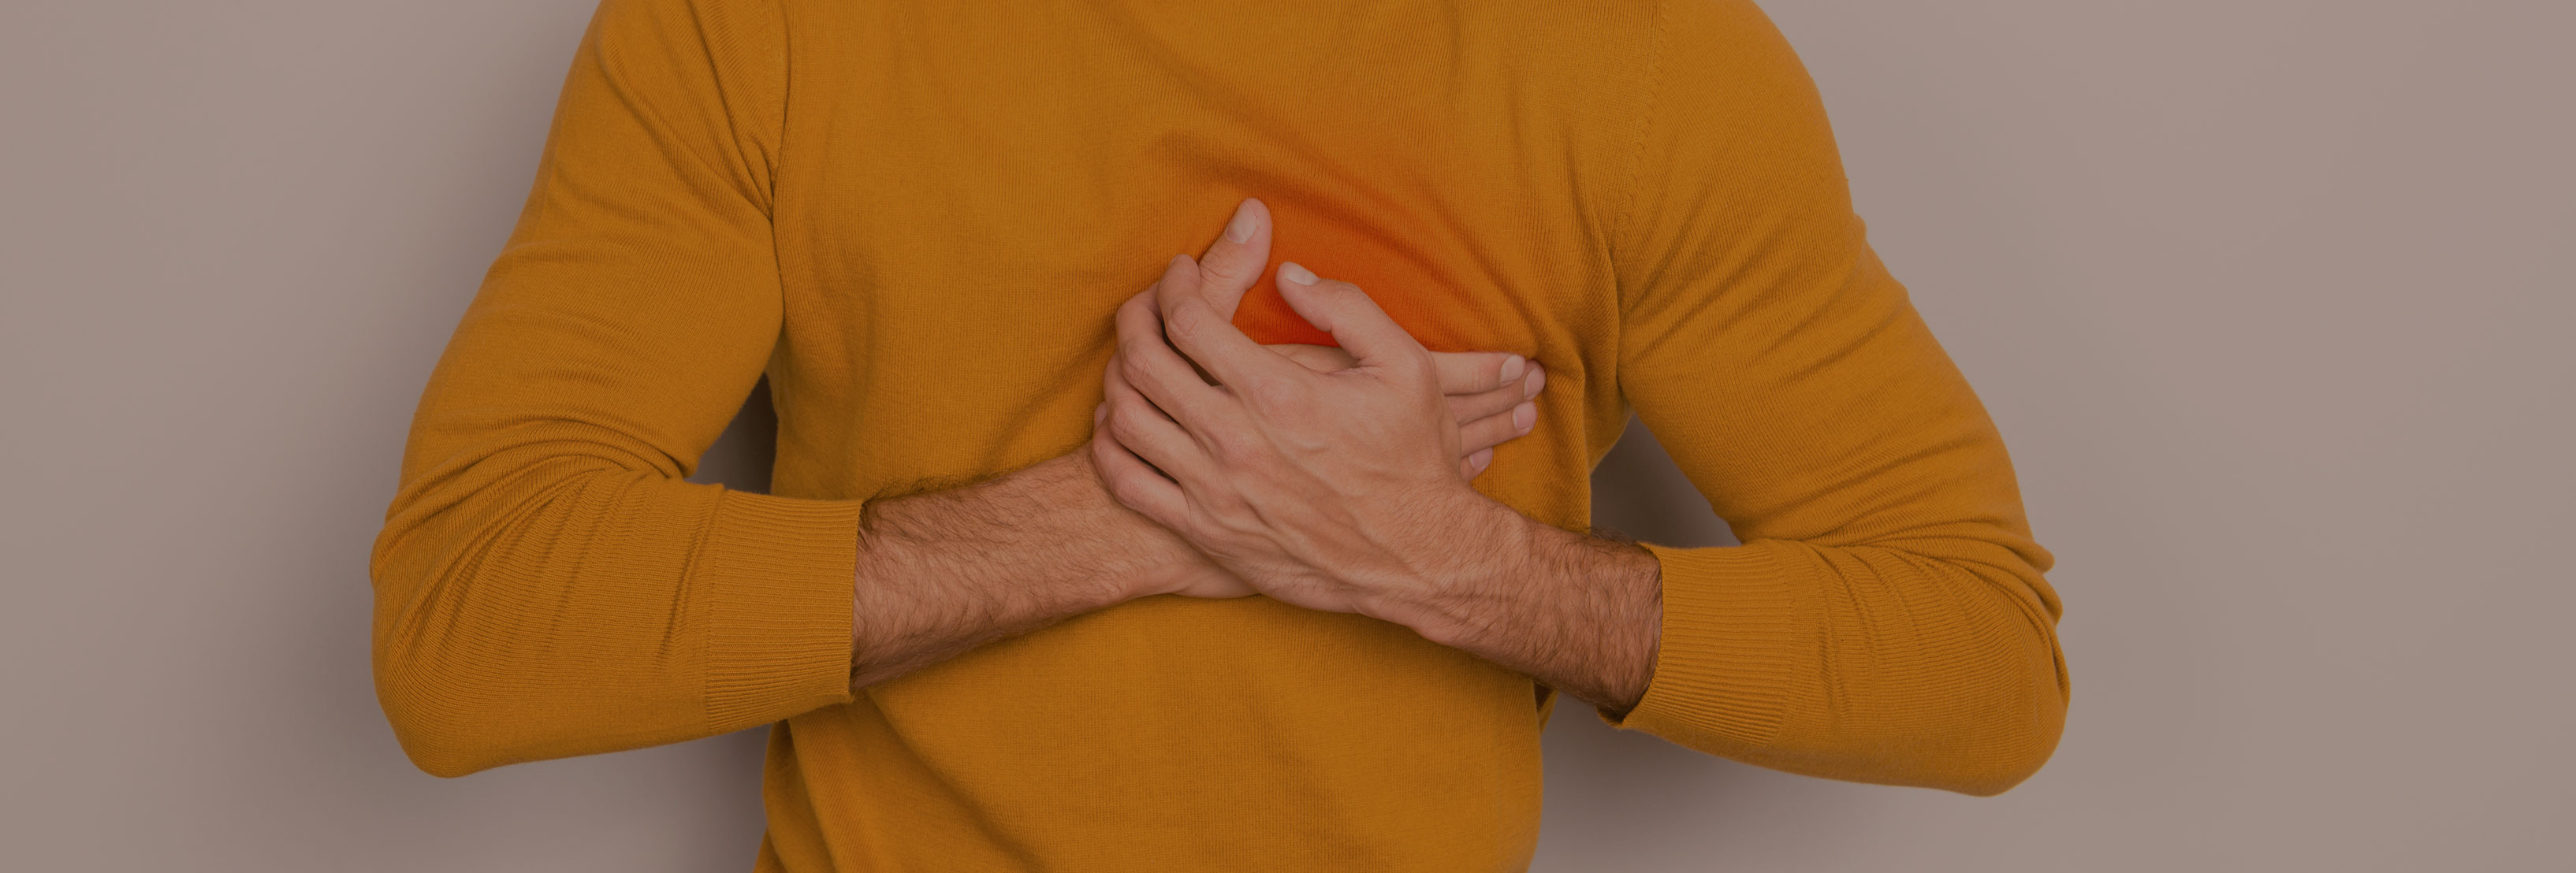 Торакалгия, боли в грудной клетке, причины опоясывающей боли в груди